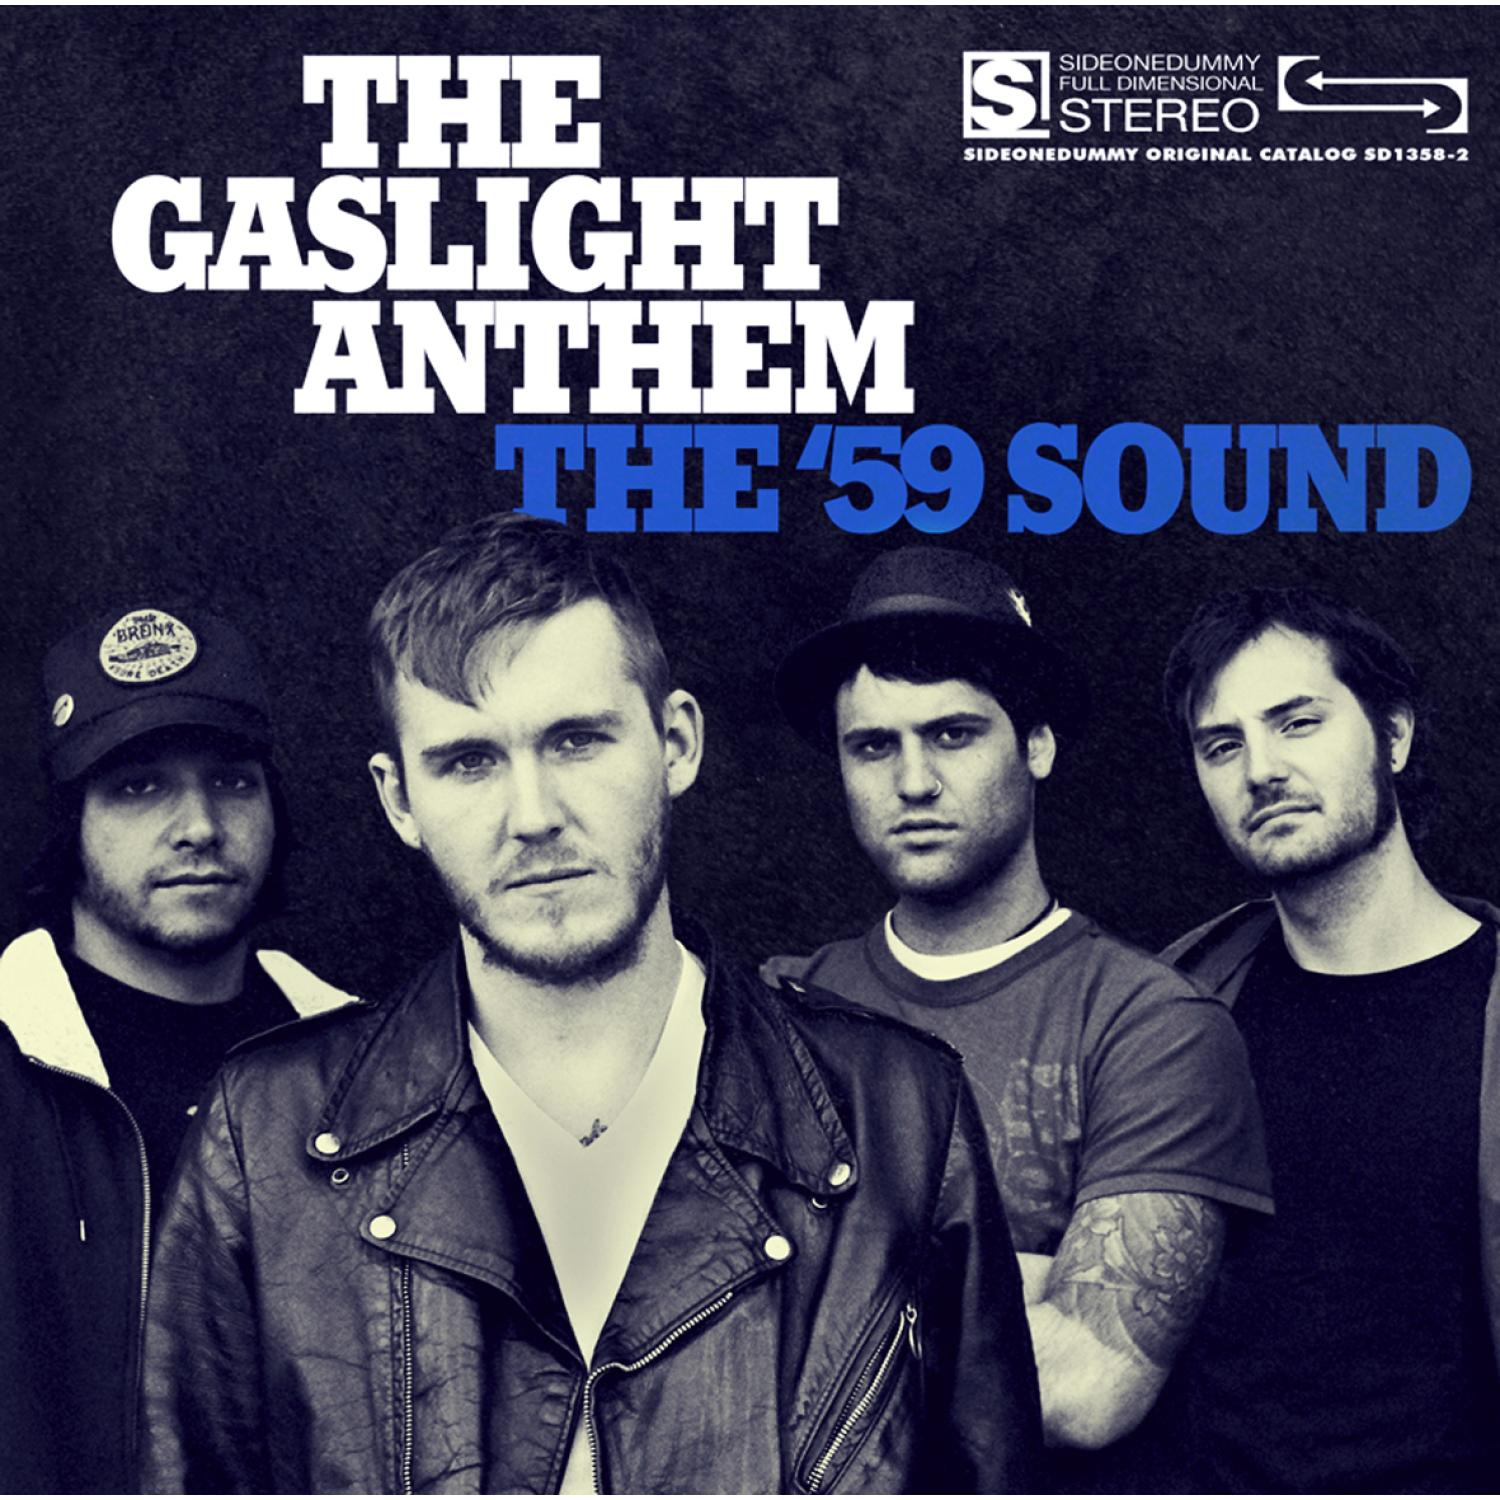 The Gaslight Anthem - The - Sound (CD) \'59